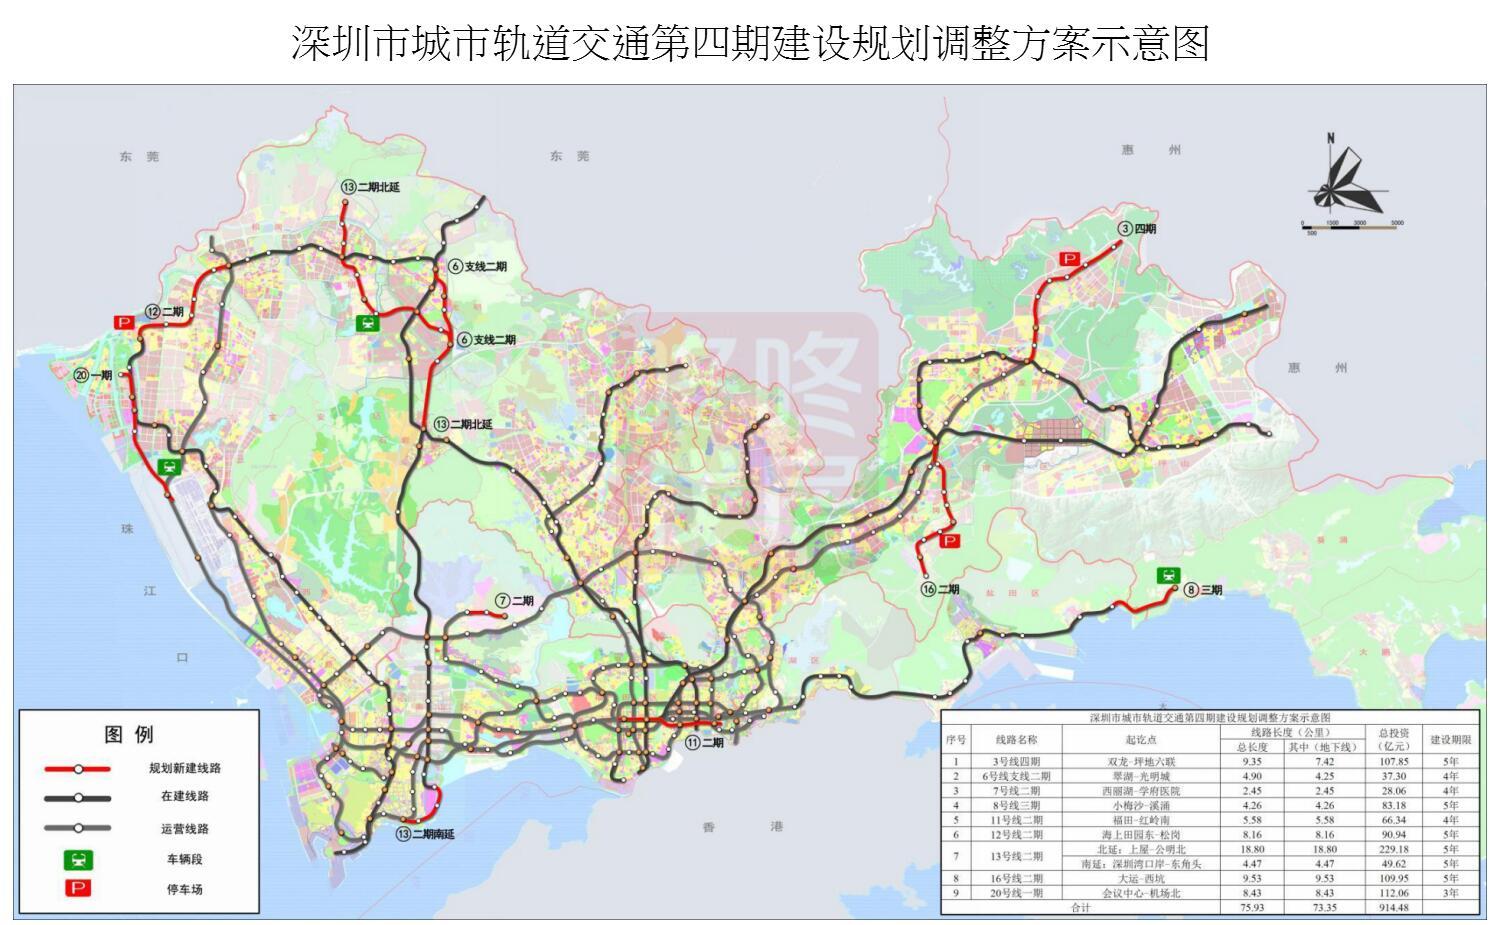 重磅!国家批复"深圳地铁四期"建设规划方案 涉及9条线路